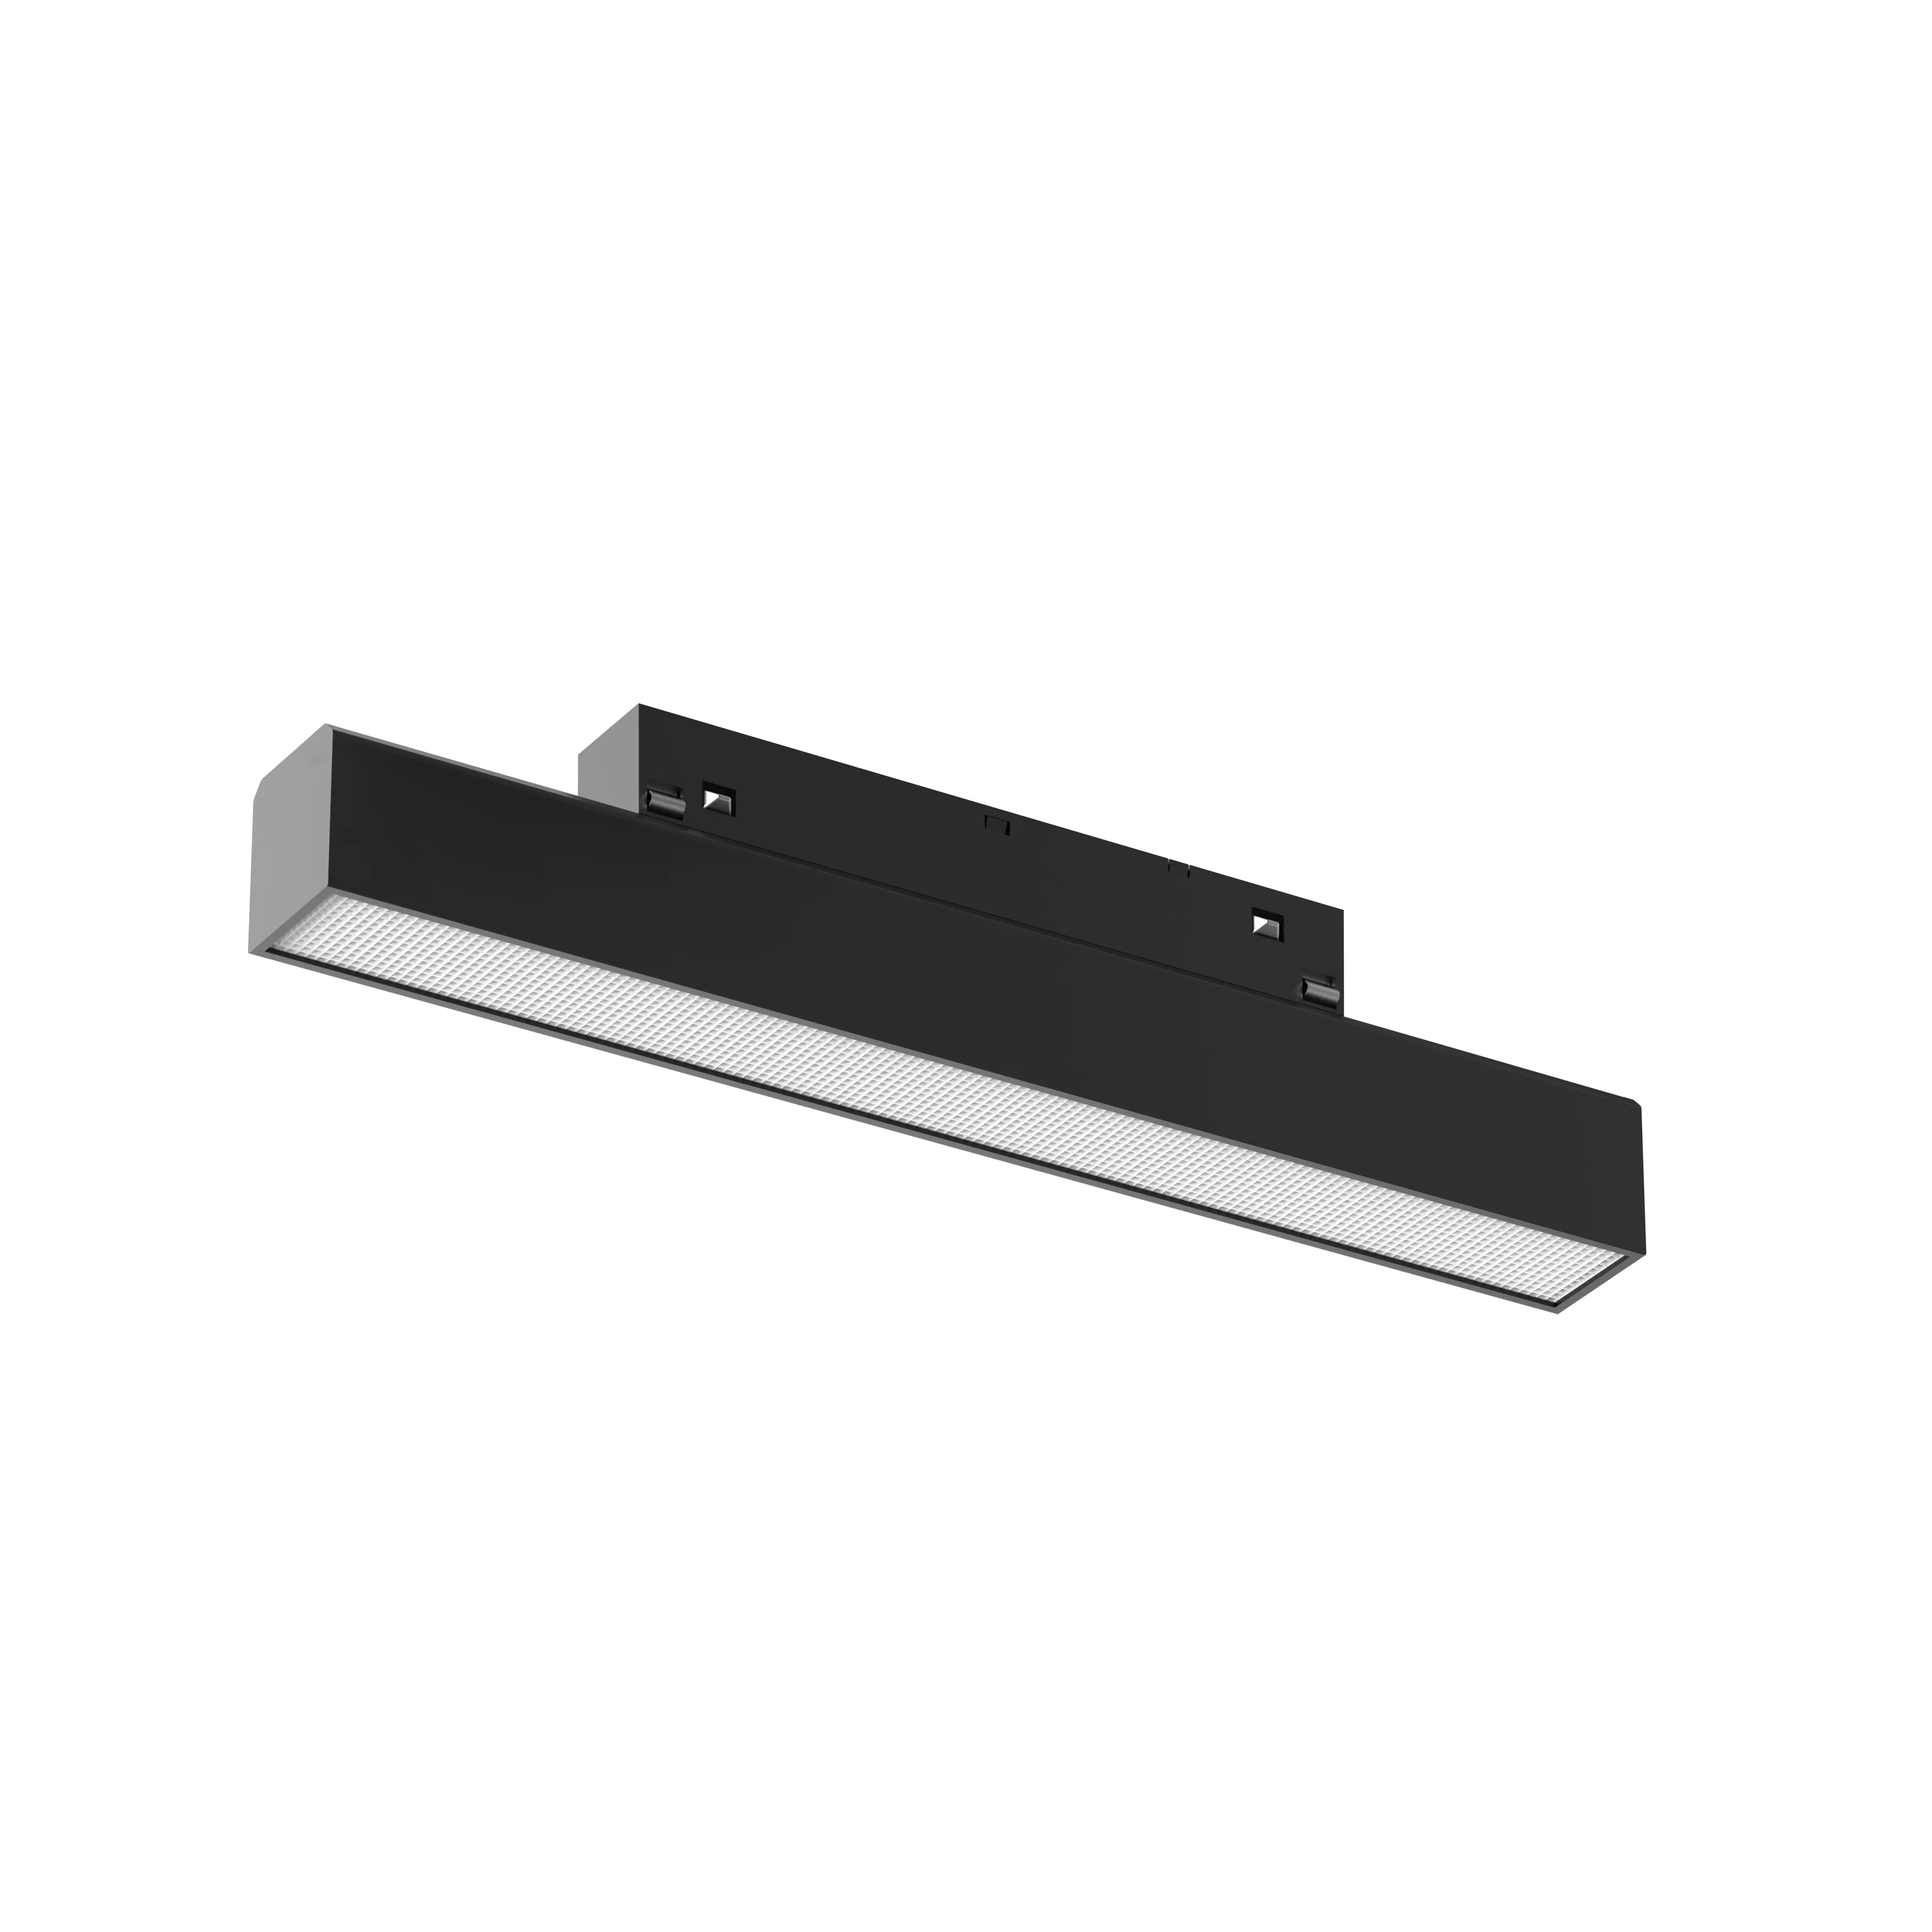 48V Track light Rail System Decken behang Abgehängt Einbau Dimmbarer Magnet Linear Focus Spotlight LED Magnets chien licht